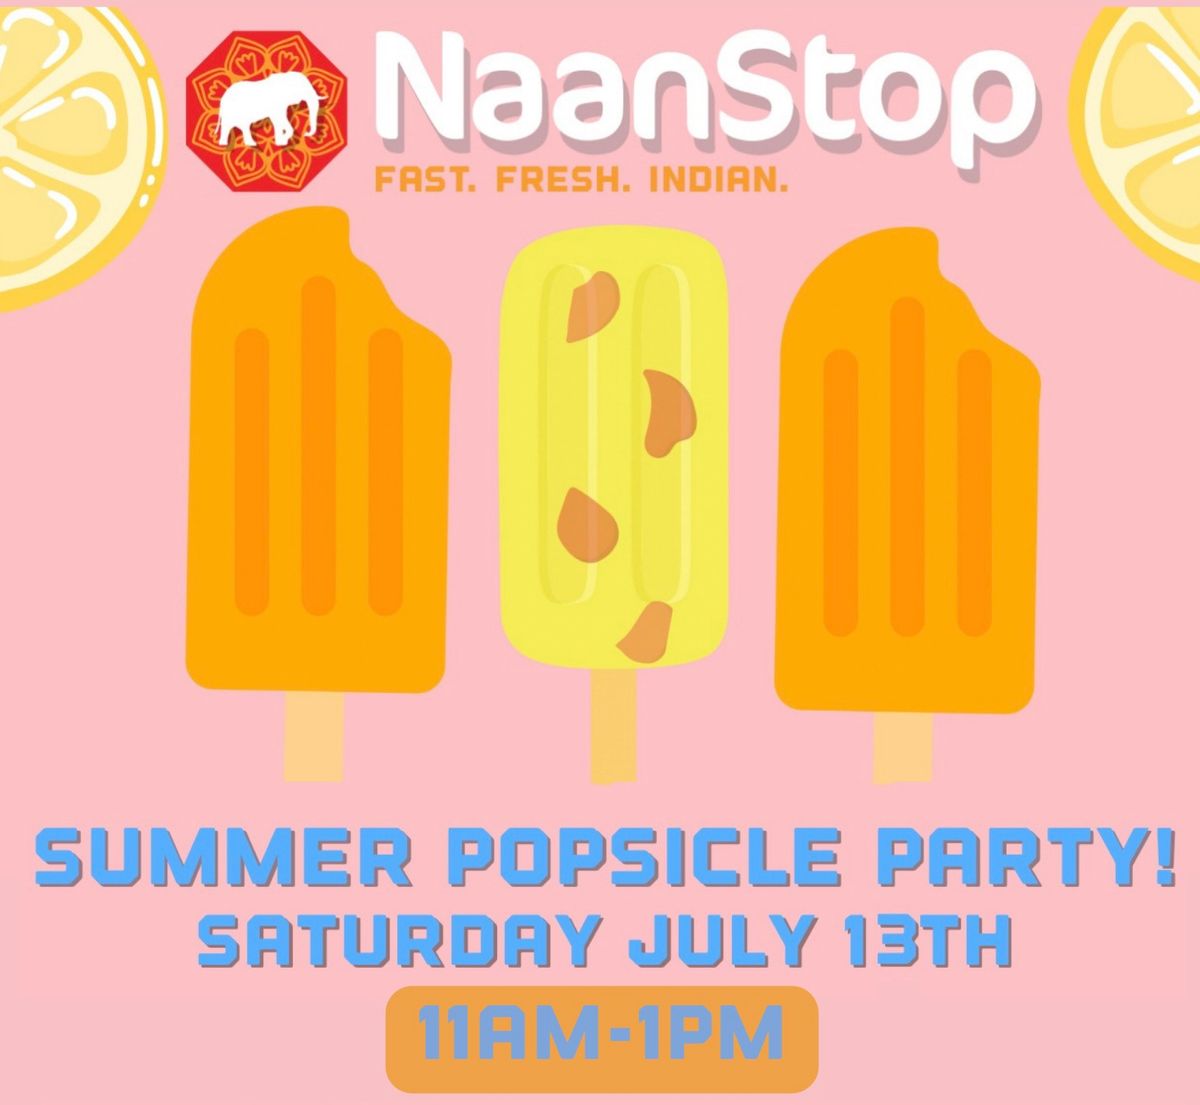 NaanStop\u2019s Summer Popsicle Party